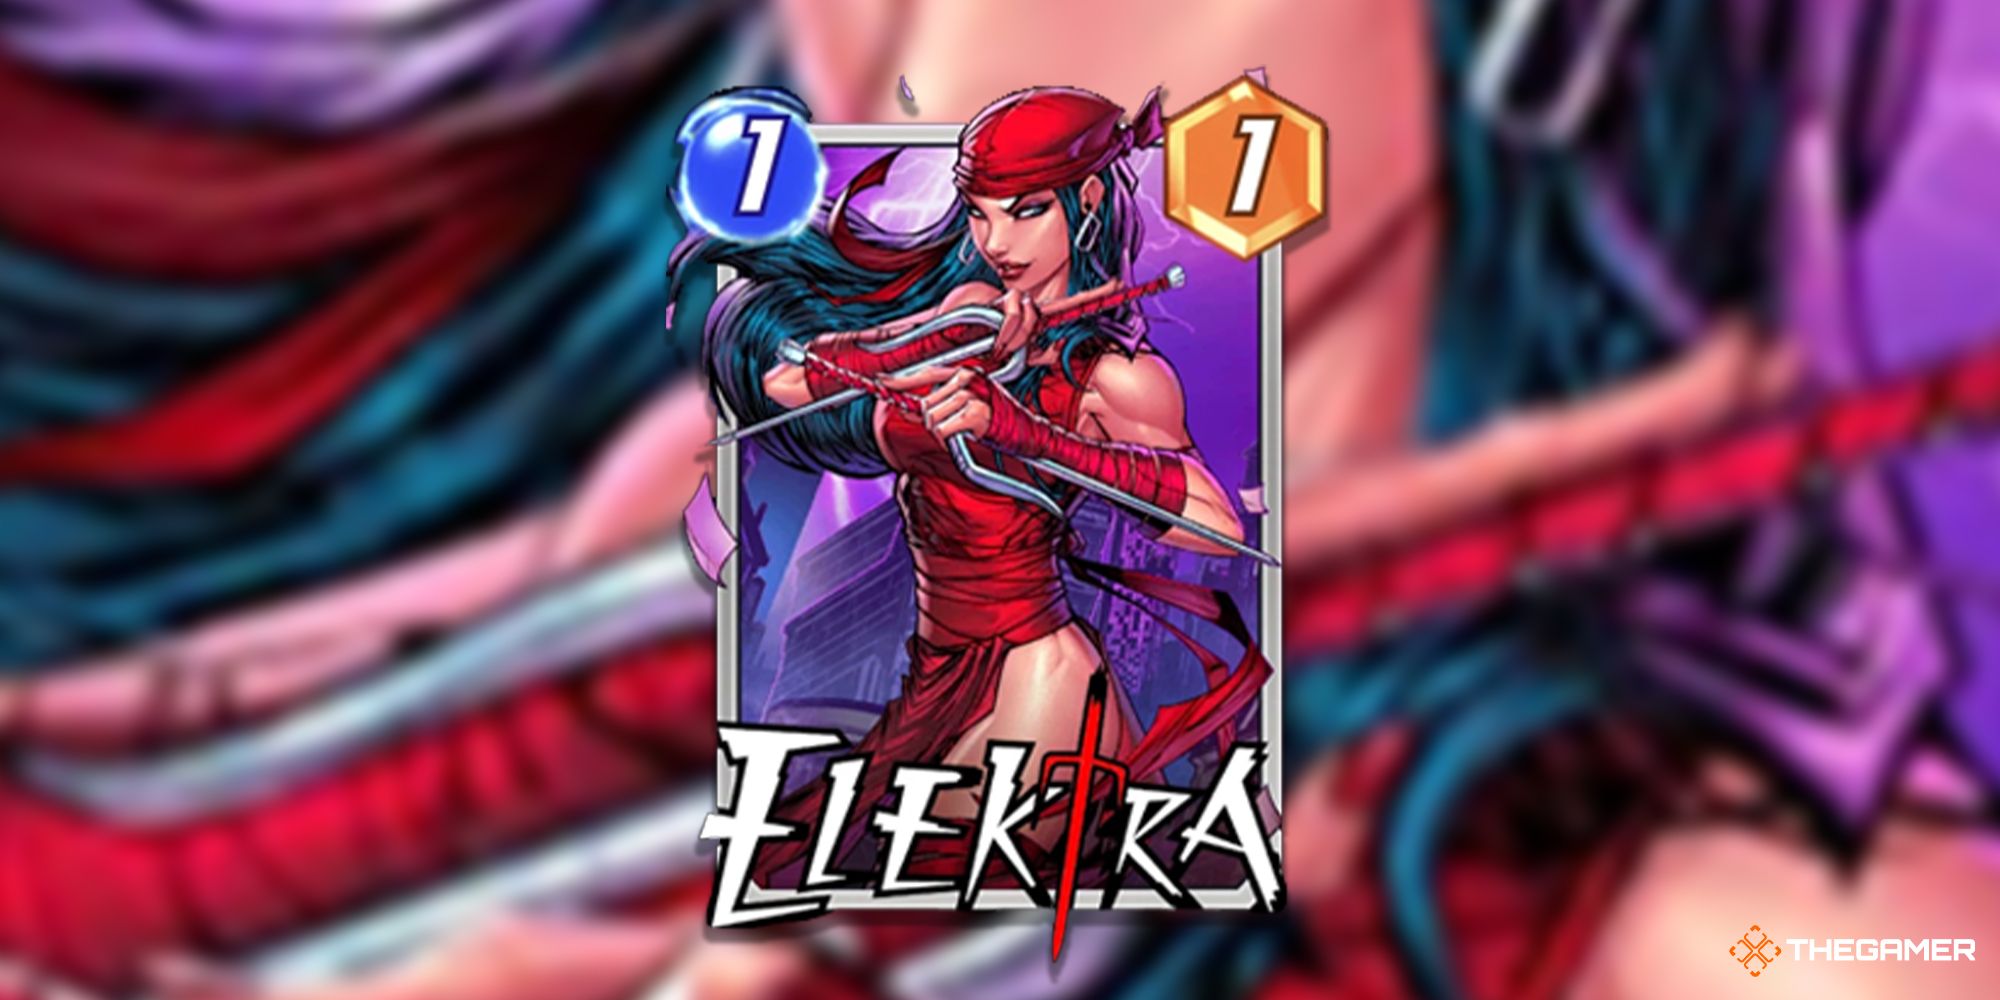 Elektra Marvel Snap